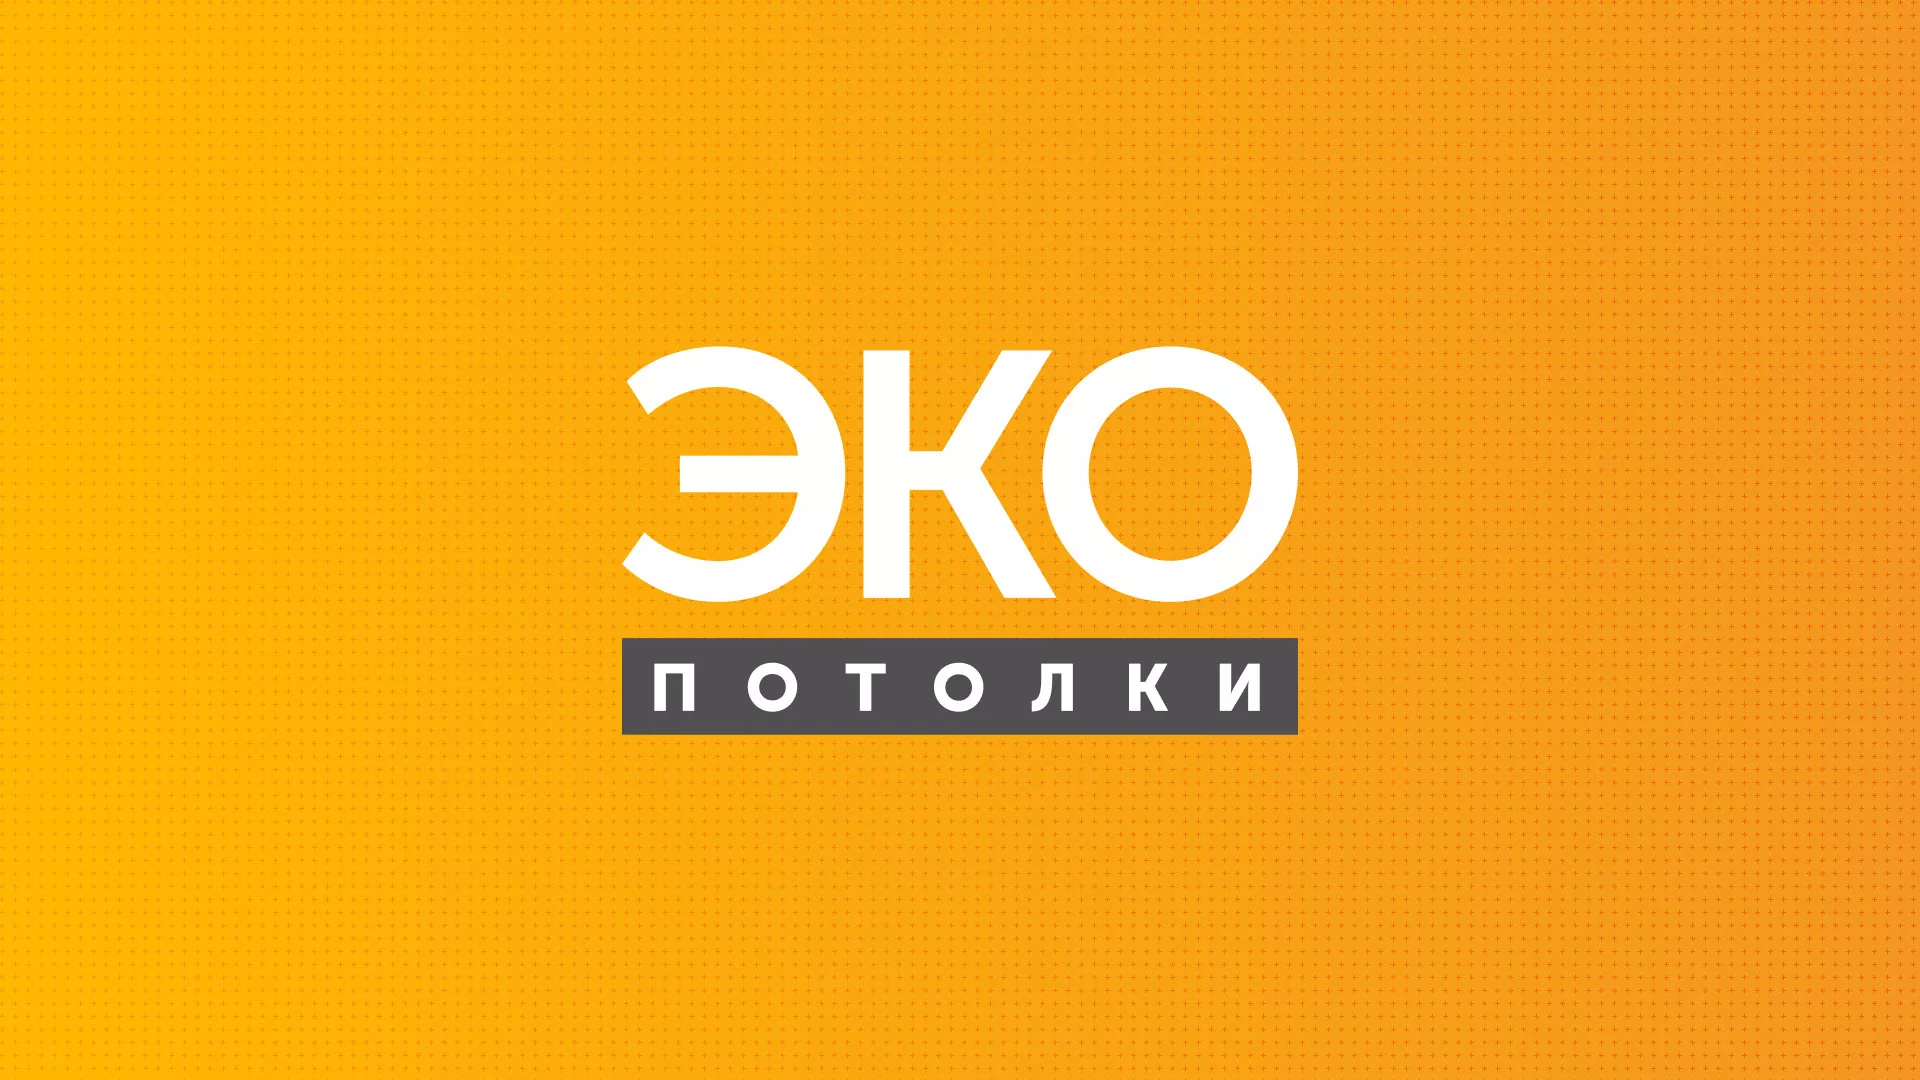 Разработка сайта по натяжным потолкам «Эко Потолки» в Беломорске